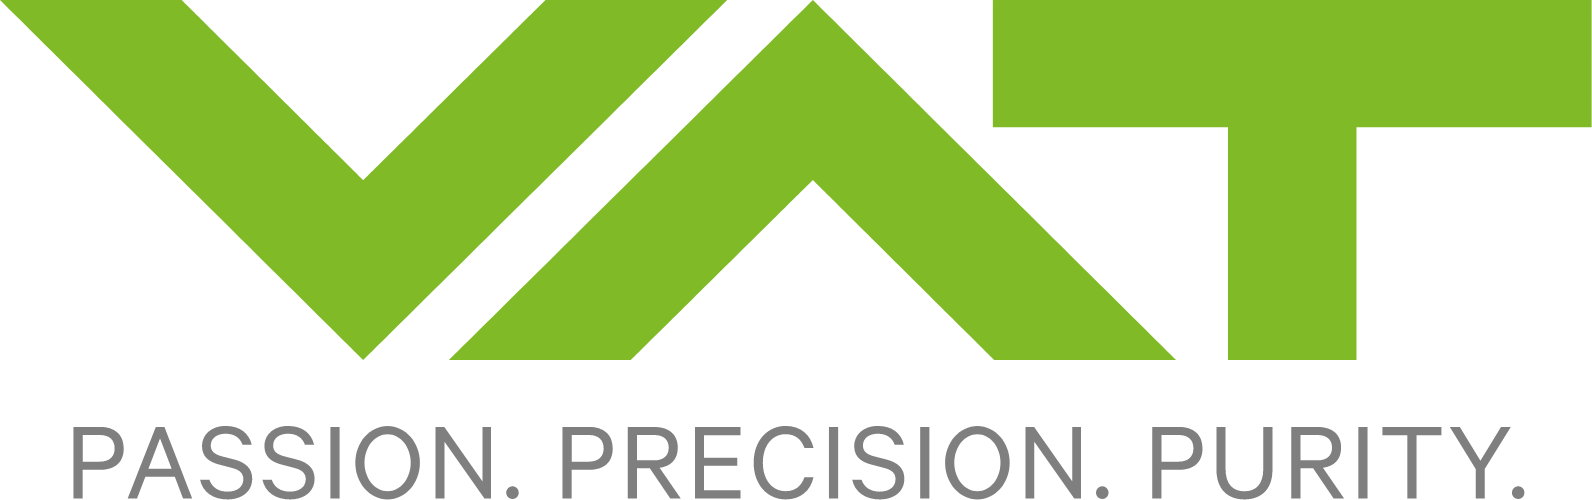 VAT Group logo large (transparent PNG)